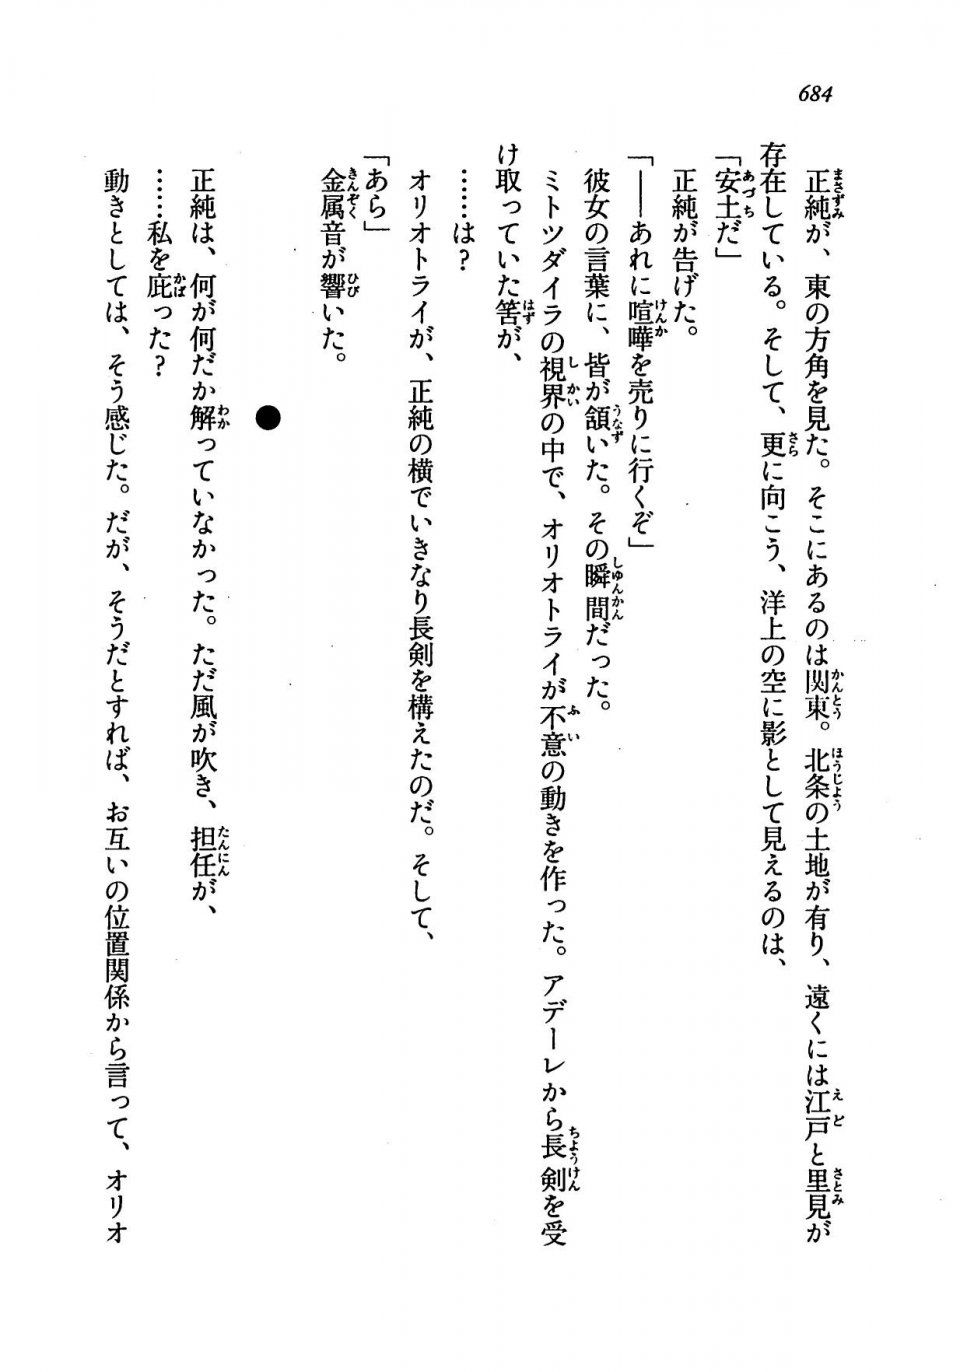 Kyoukai Senjou no Horizon LN Vol 19(8A) - Photo #684